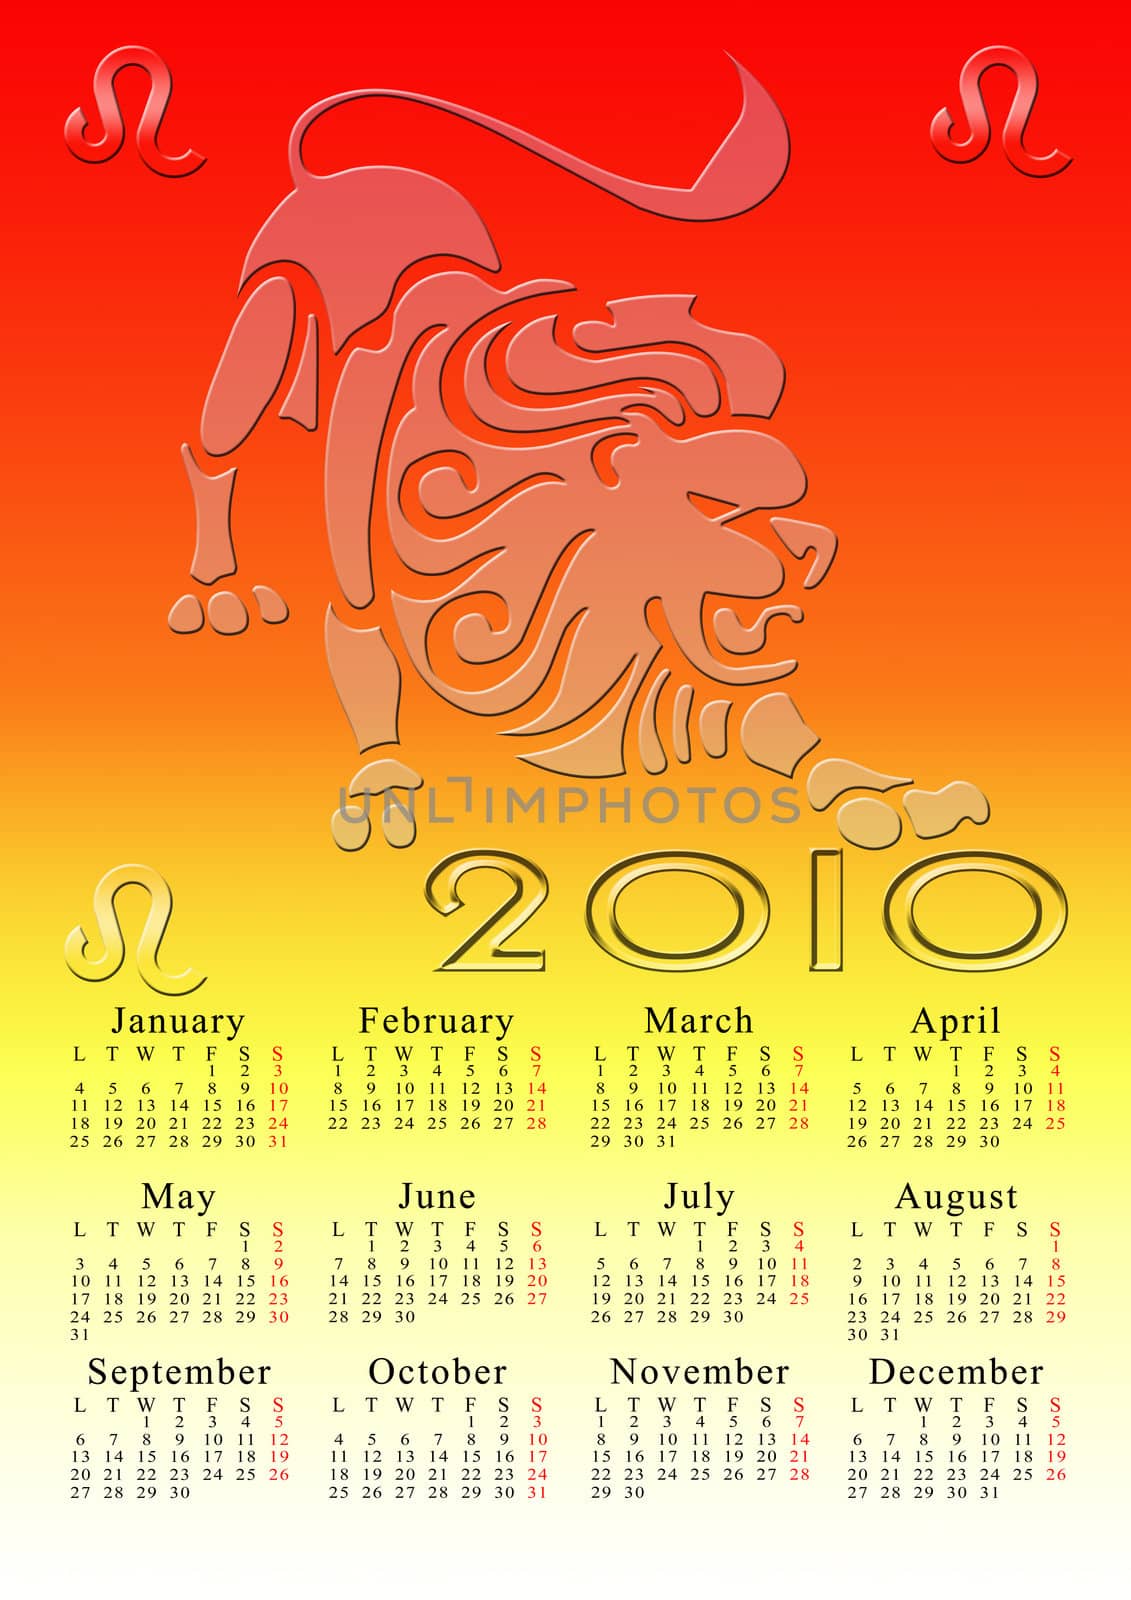 zodiac calendar leo by walex101